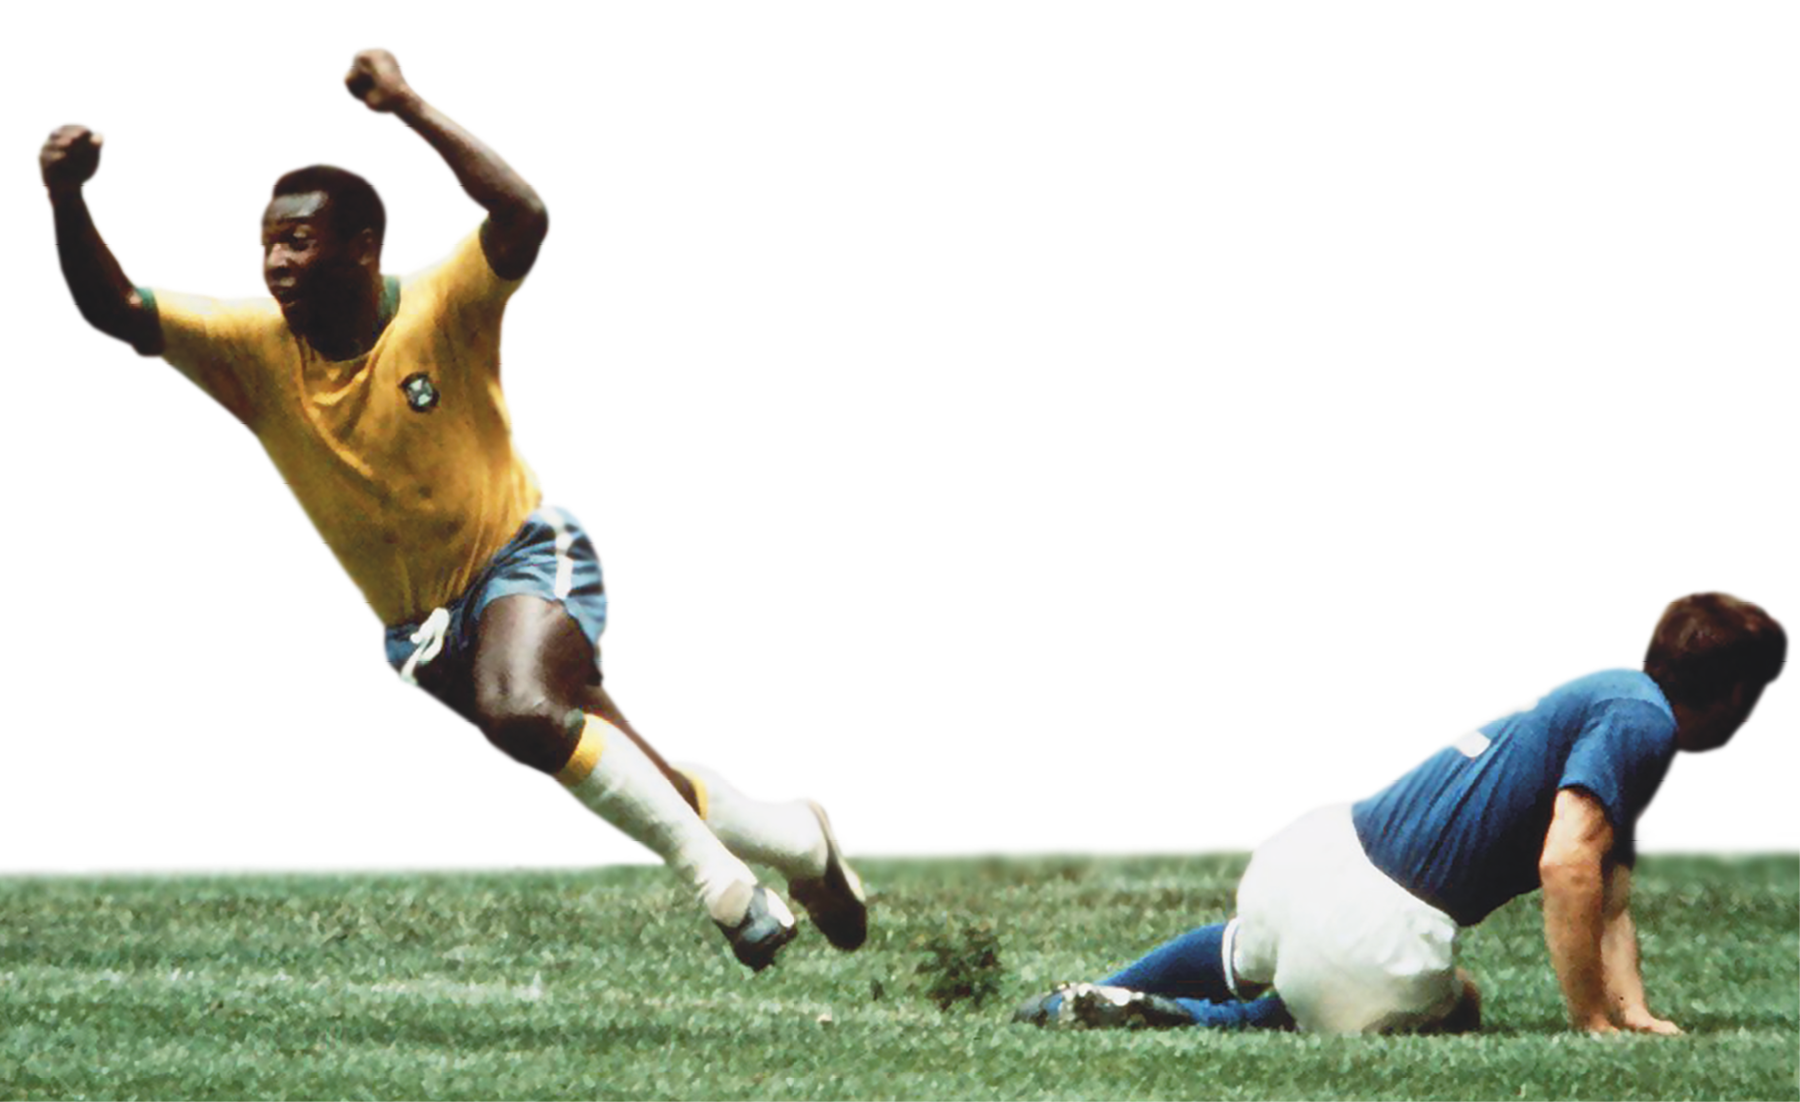 Fotografia. Pelé correndo no campo, com os braços erguidos para cima, comemorando. Ele veste camisa amarela e shorts azul da seleção brasileira. Ao seu lado, caído em campo, um jogador de camisa azul e calção branco da seleção italiana.